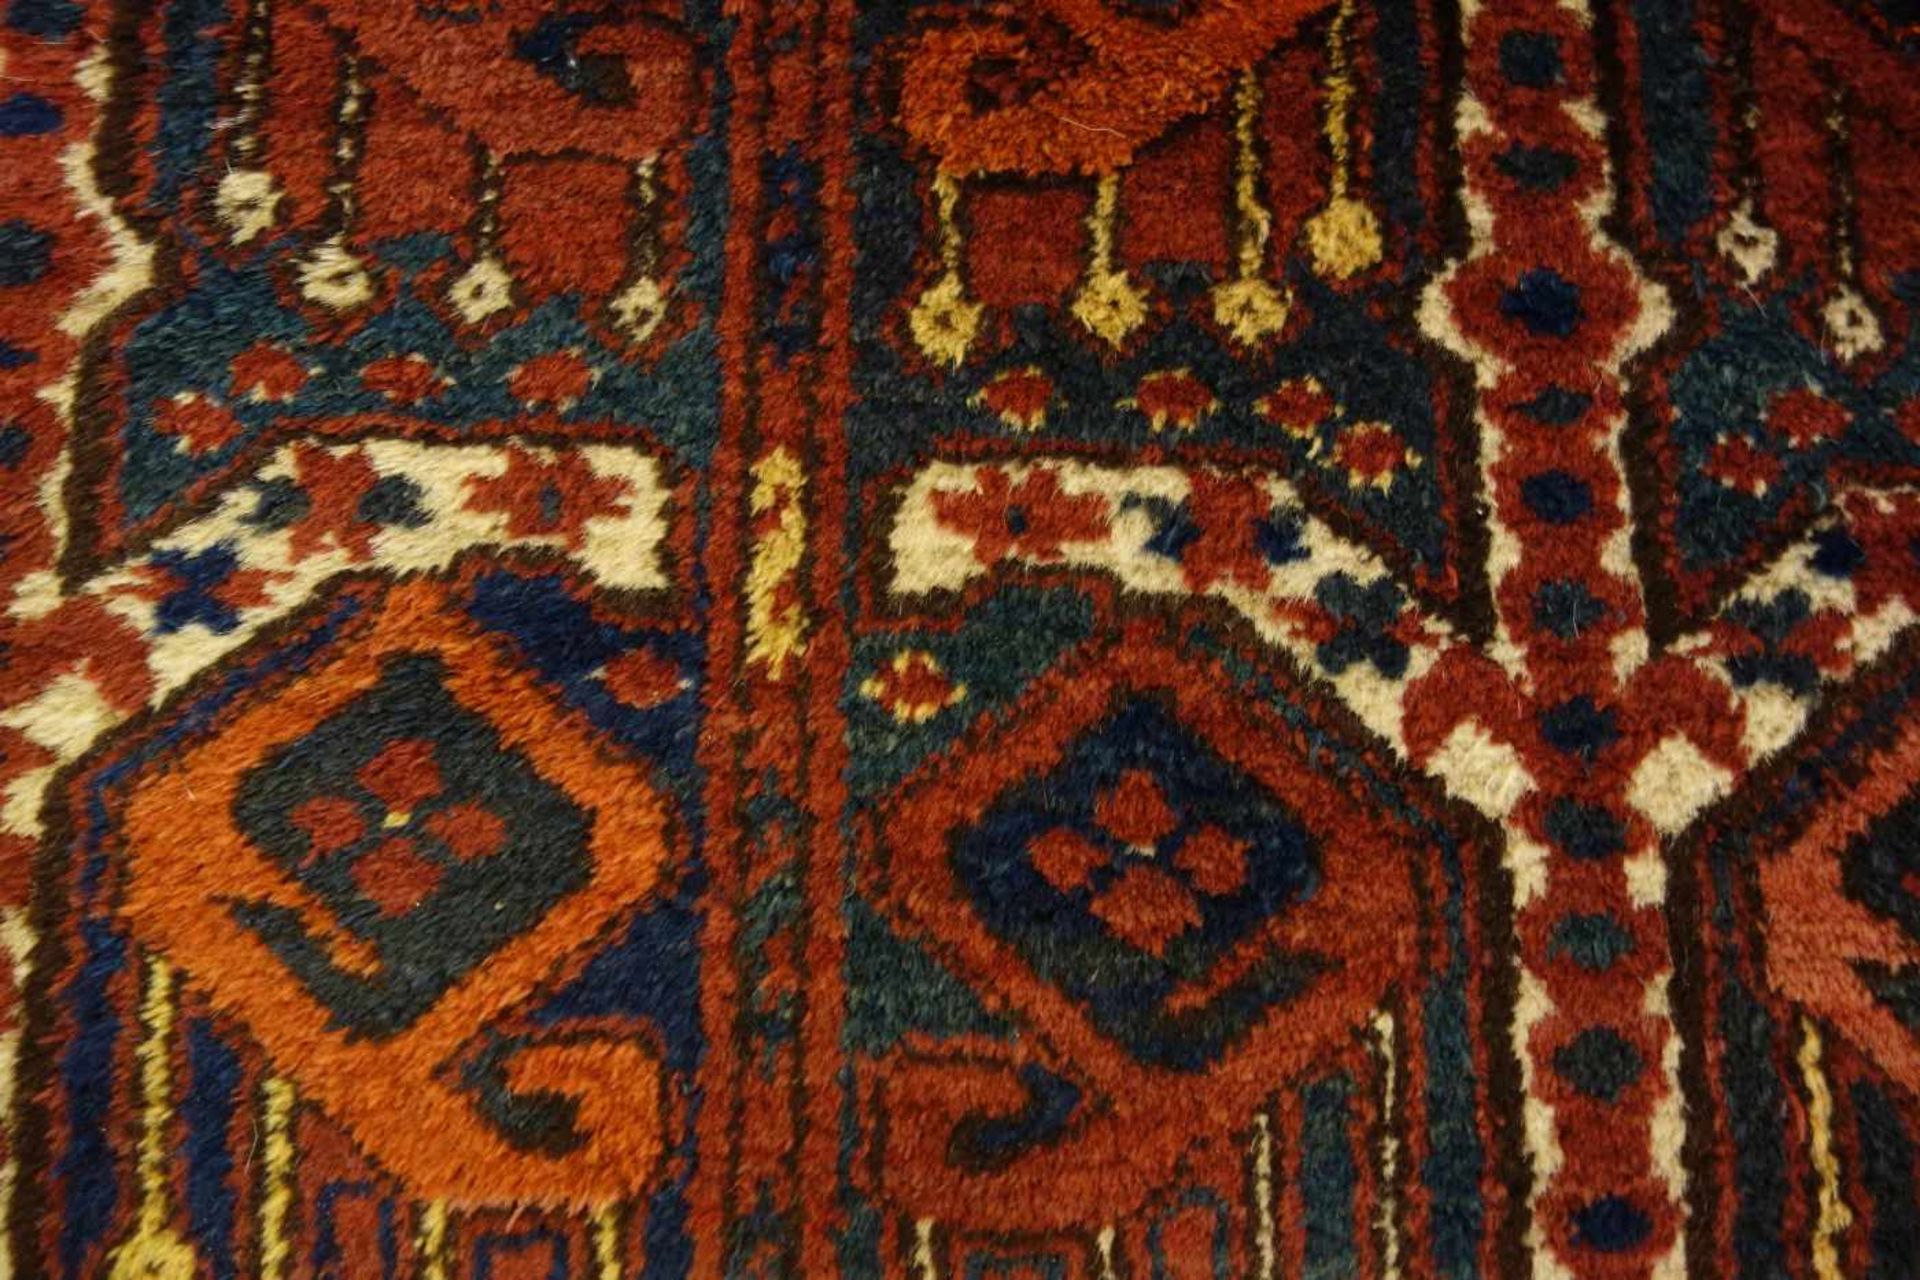 BESCHIR (ERSARI BESCHIR) / KLEINER TEPPICH / carpet / Zentralasien oder Südturkestan, wahrscheinlich - Image 10 of 15